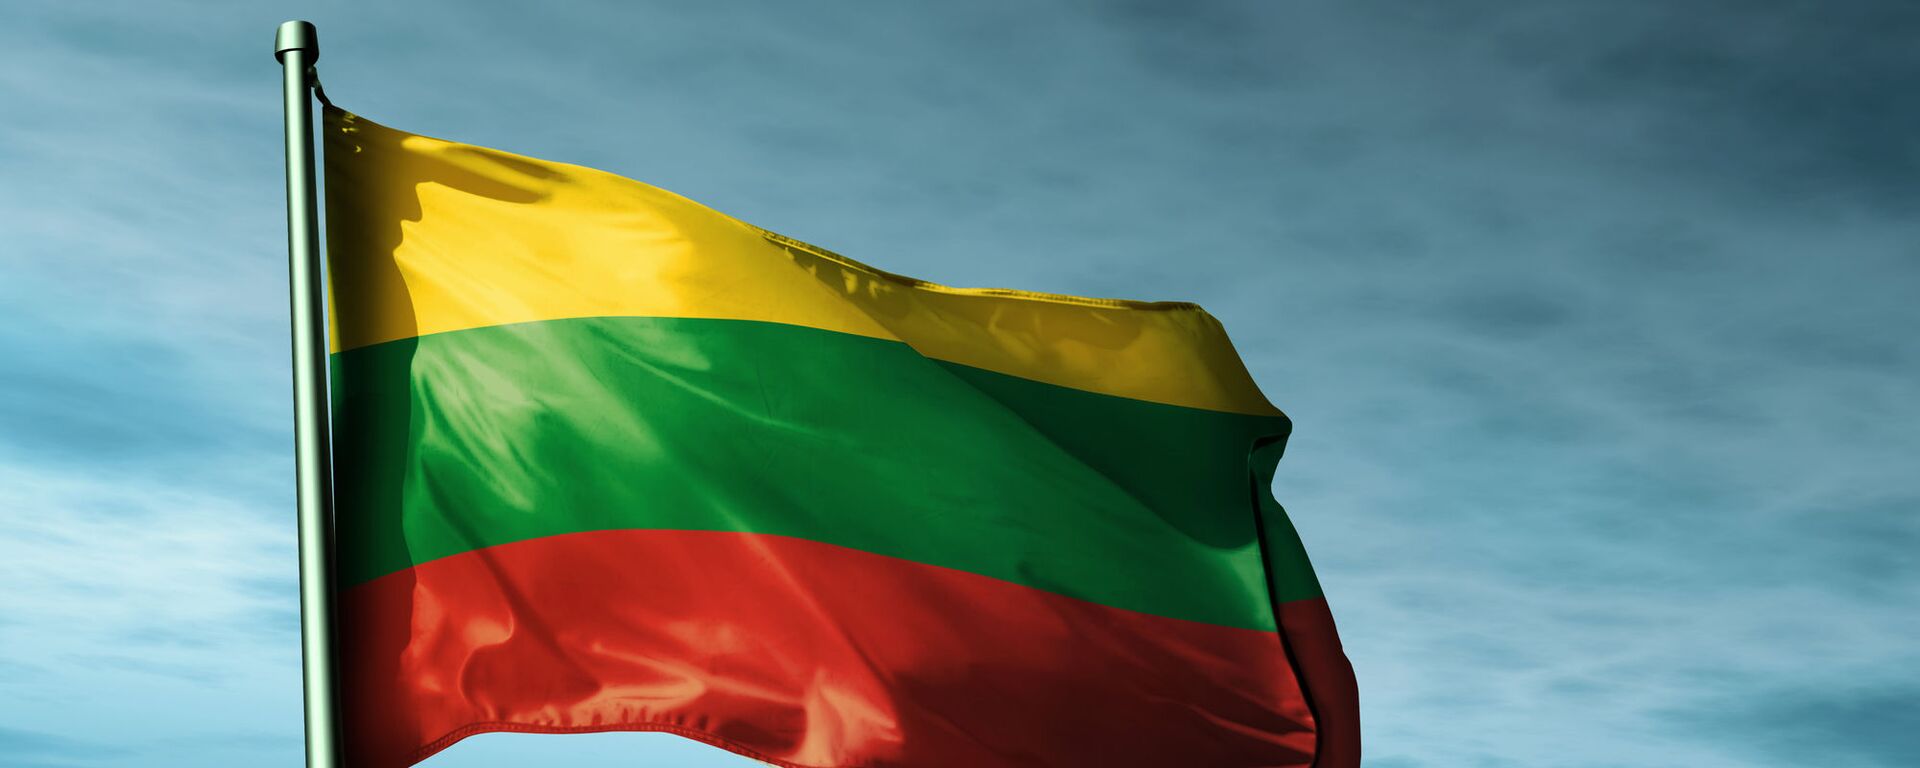 Литовский флаг, архивное фото - Sputnik Lietuva, 1920, 12.08.2019